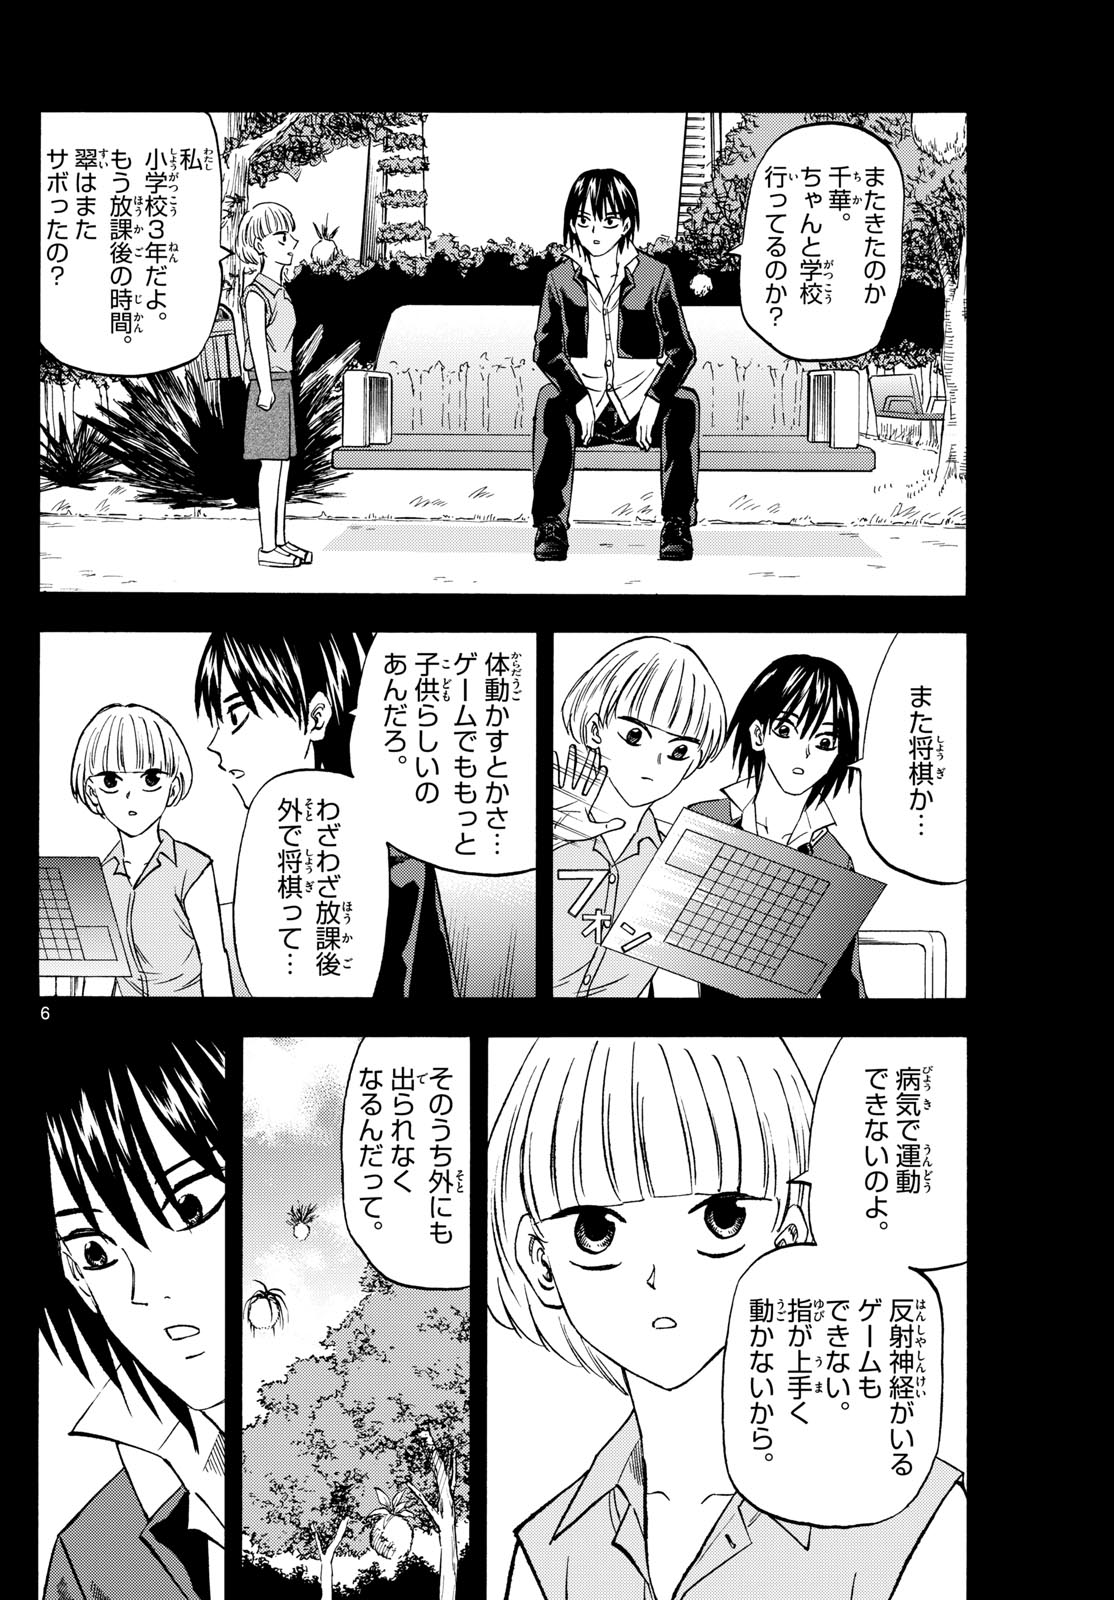 Tatsu to Ichigo - Chapter 193 - Page 6